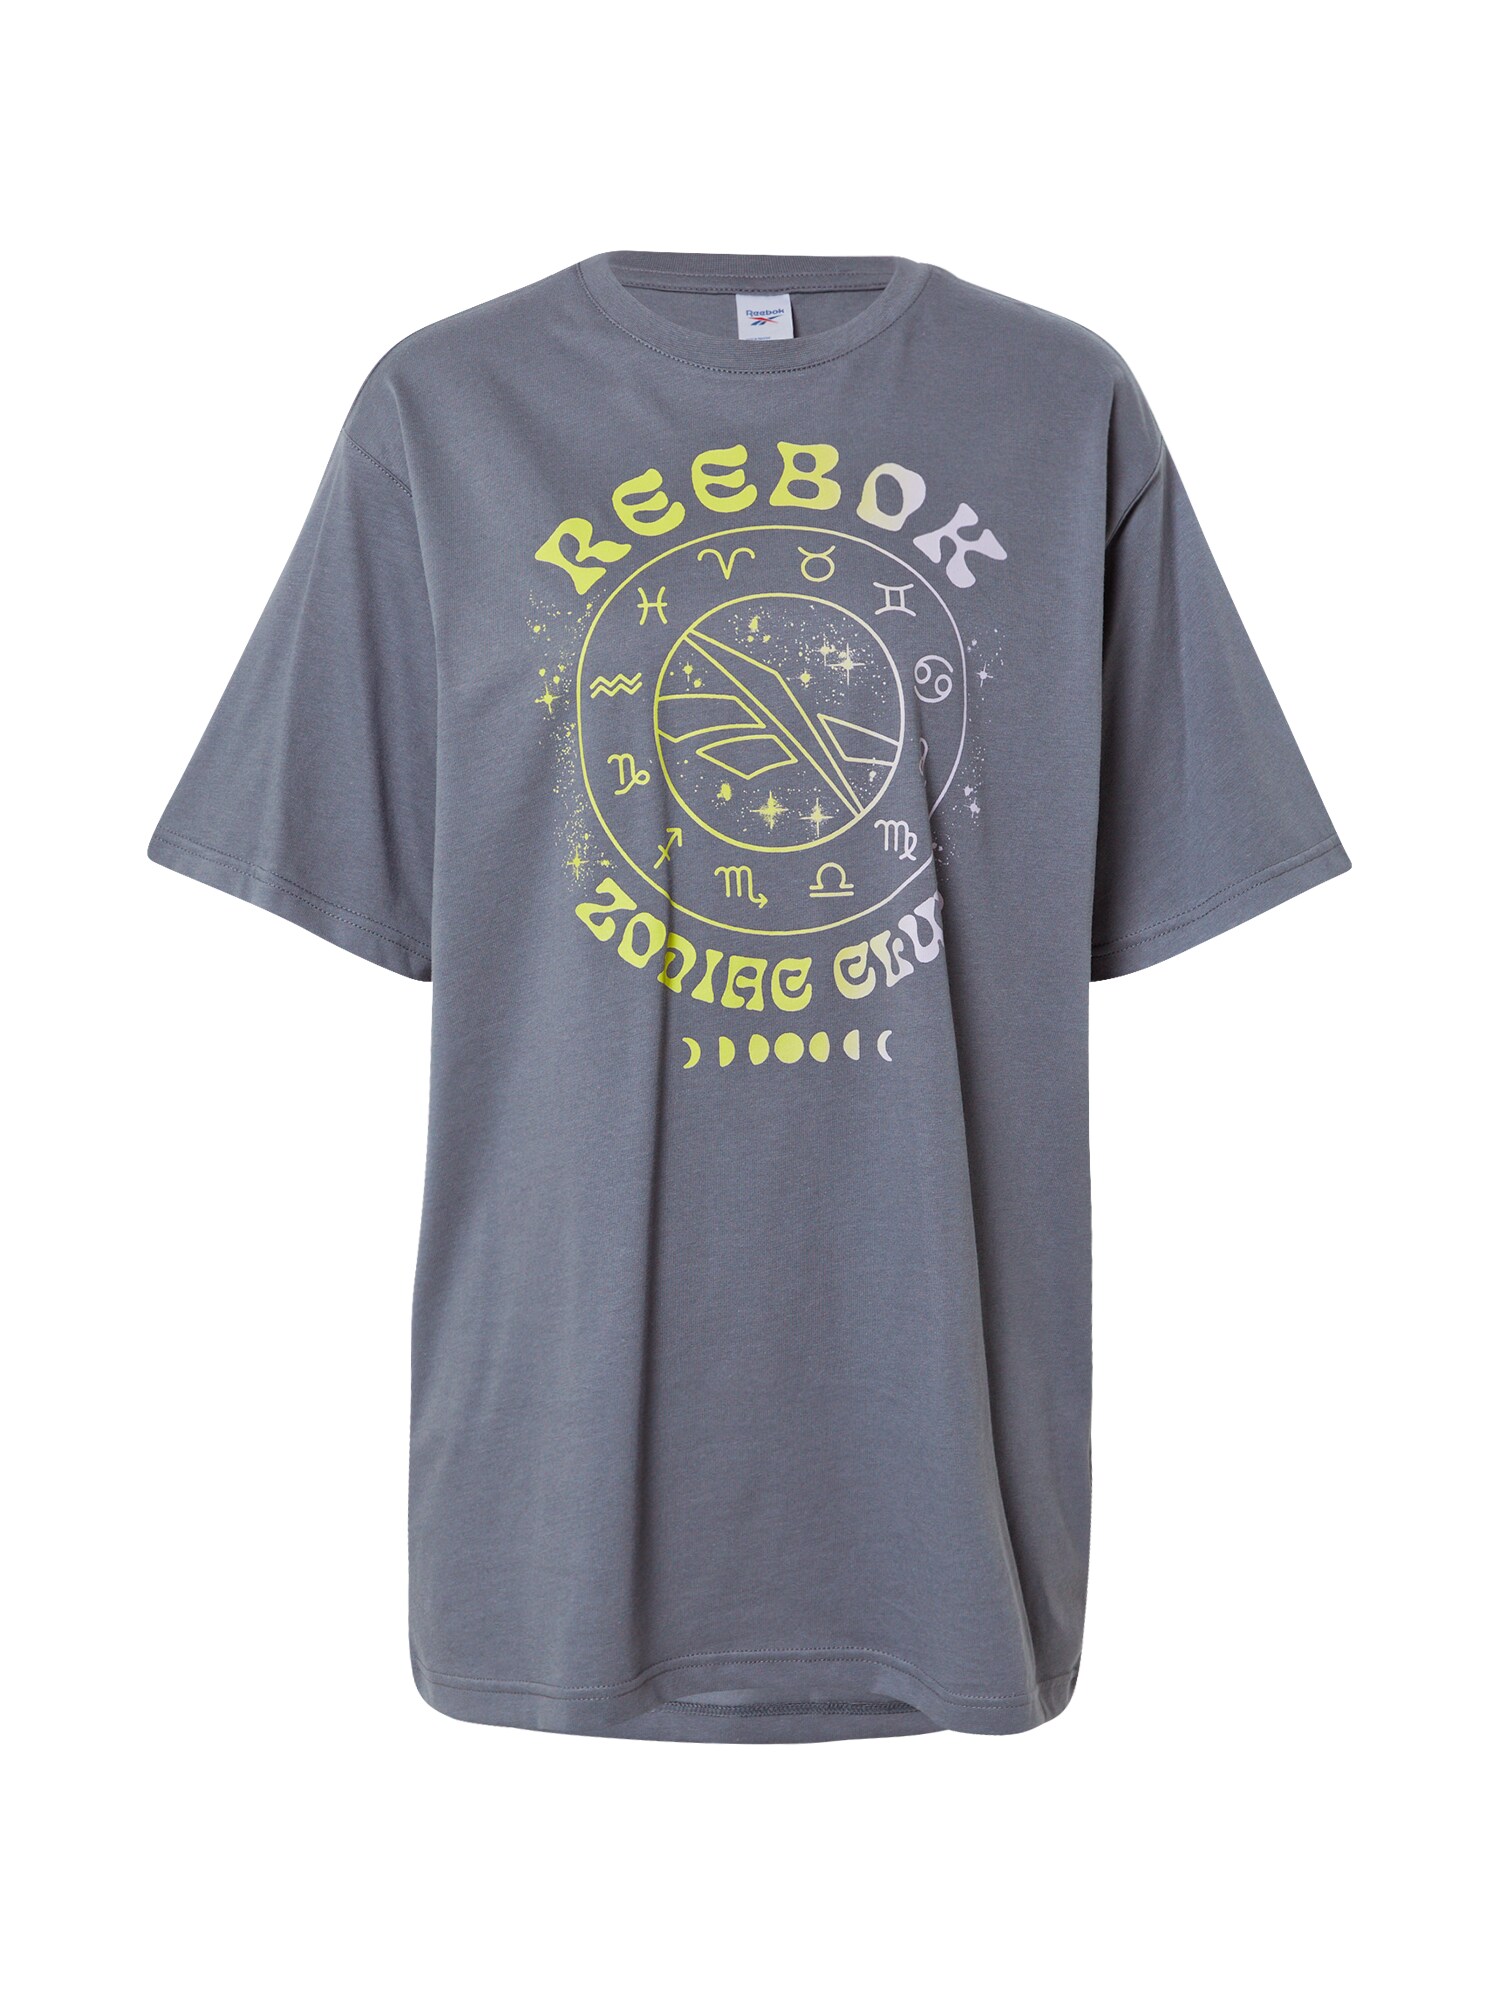 Reebok Classics Laisvi marškinėliai tamsiai pilka / balta / šviesiai geltona